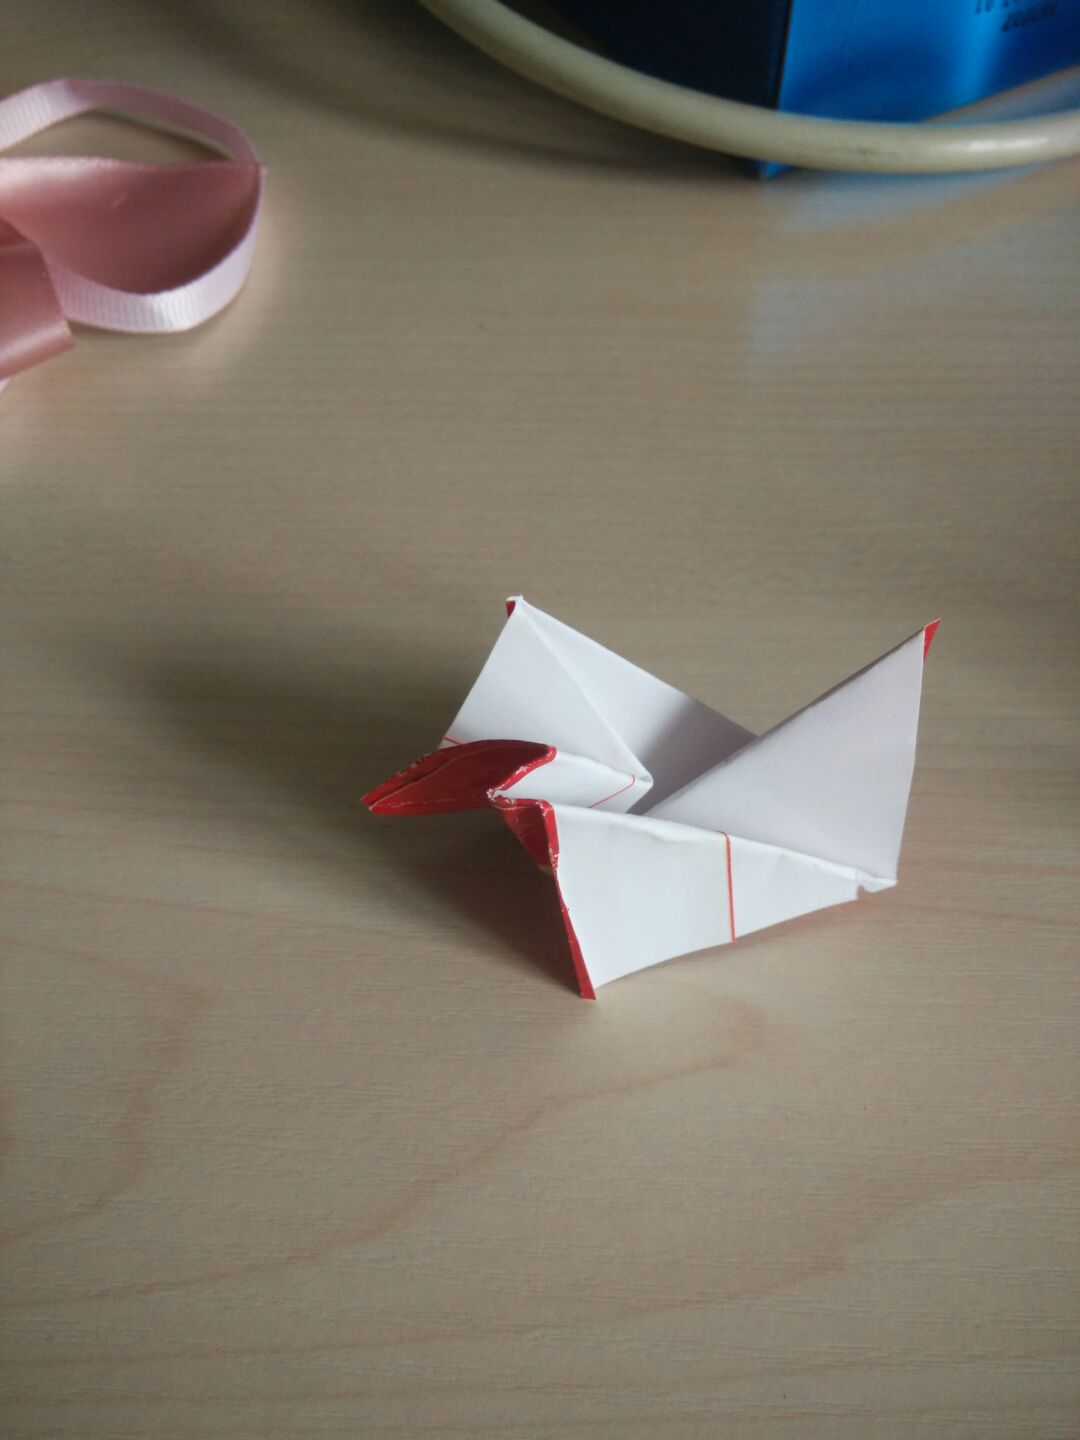 教你折纸小鸡红包折纸方法详细步骤图解╭★肉丁网